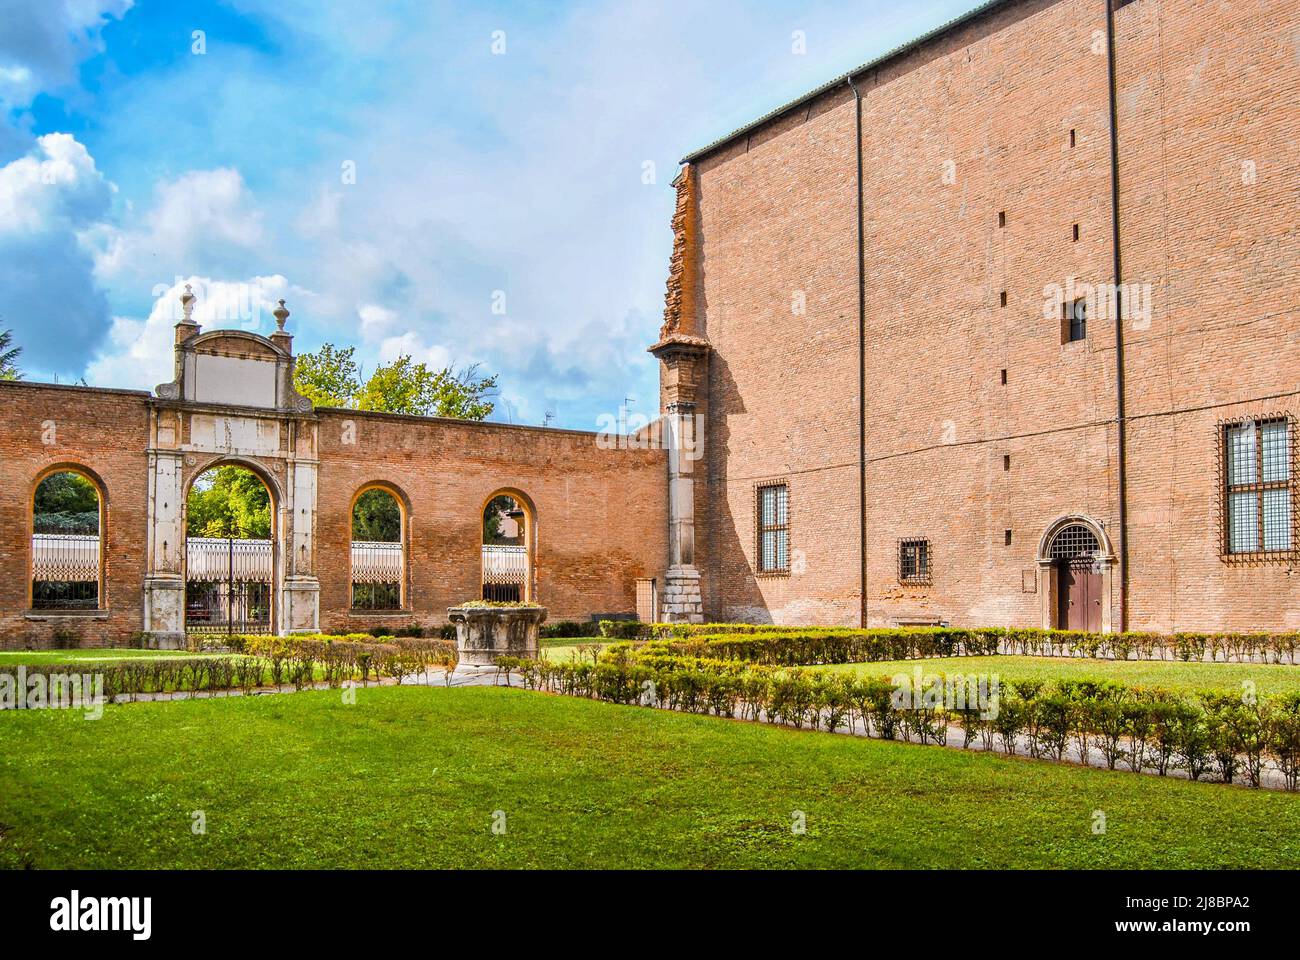 Il cortile e il giardino di Palazzo dei diamanti, edificio rinascimentale costruito nel 15th secolo. Ferrara, Emilia Romagna, Italia Foto Stock